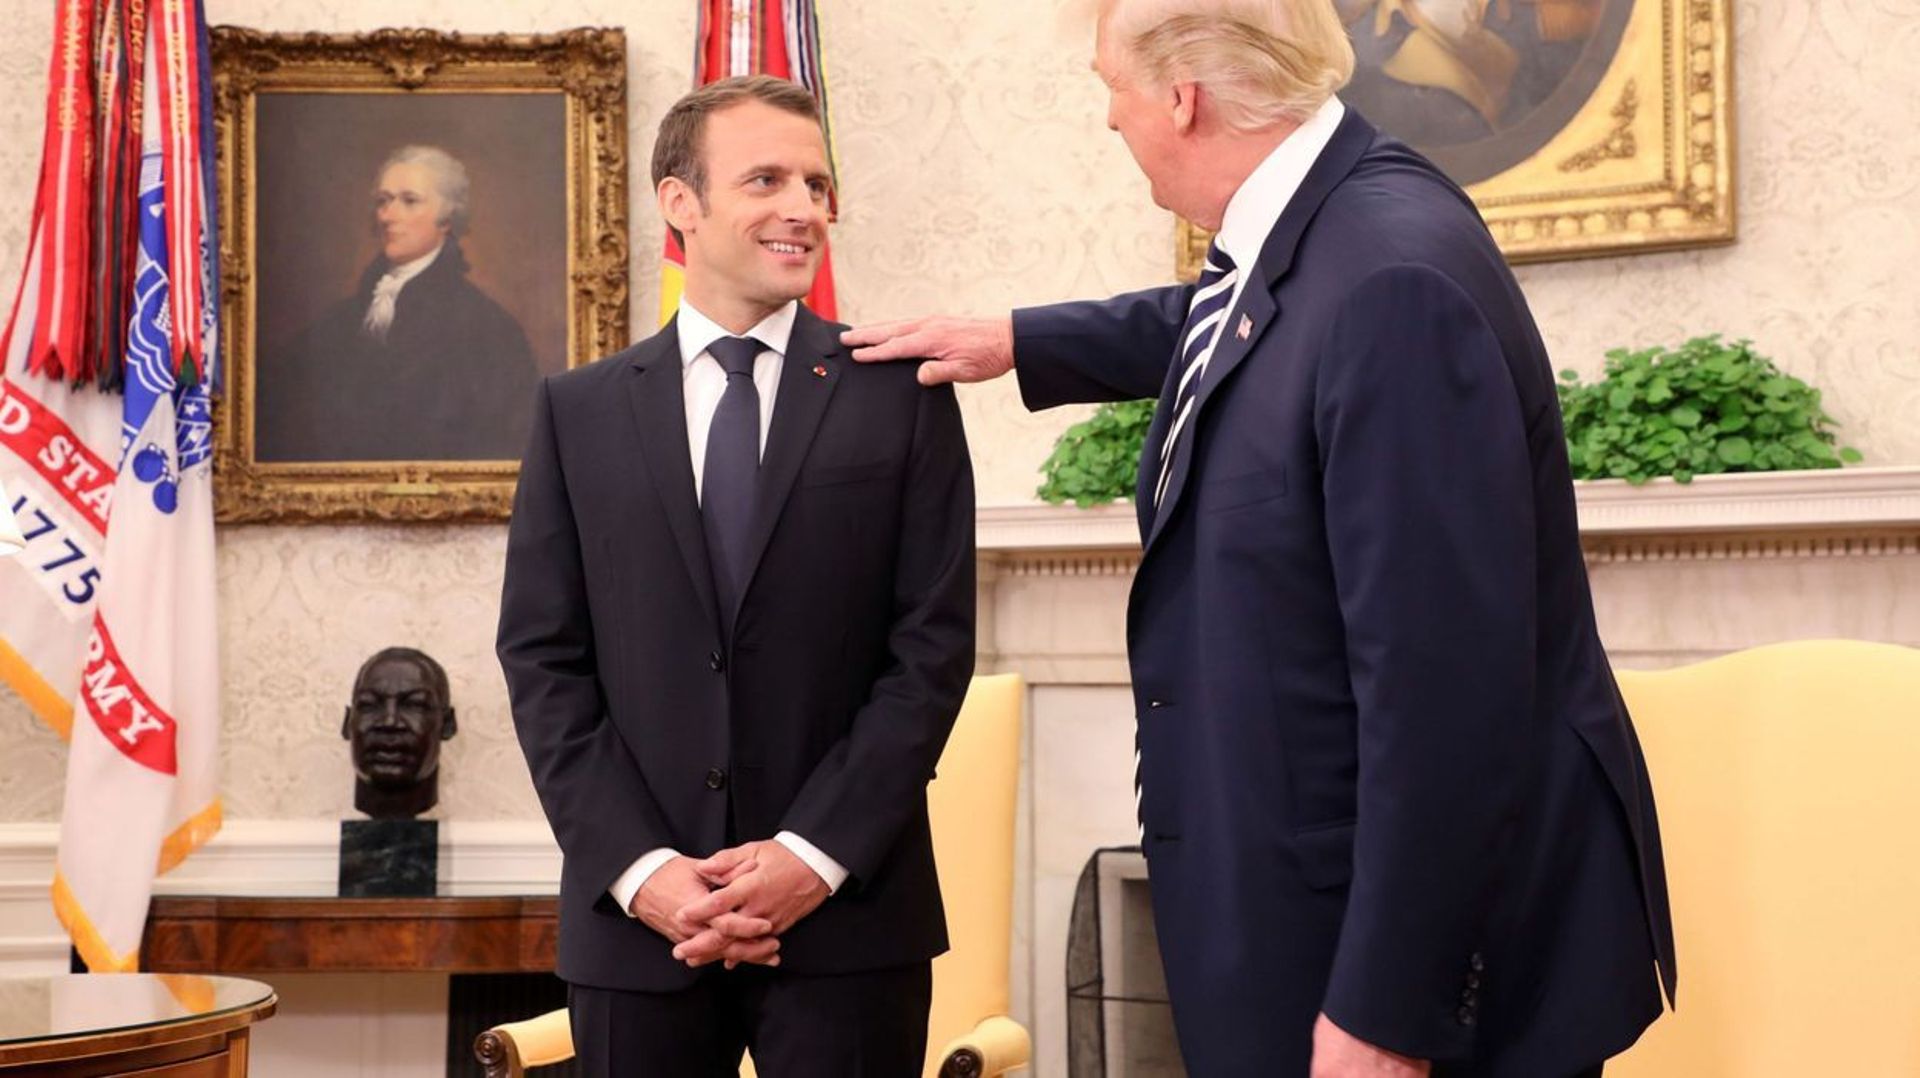 Dans le bureau ovale, Donald Trump époussette l'épaule d'Emmanuel Macron.